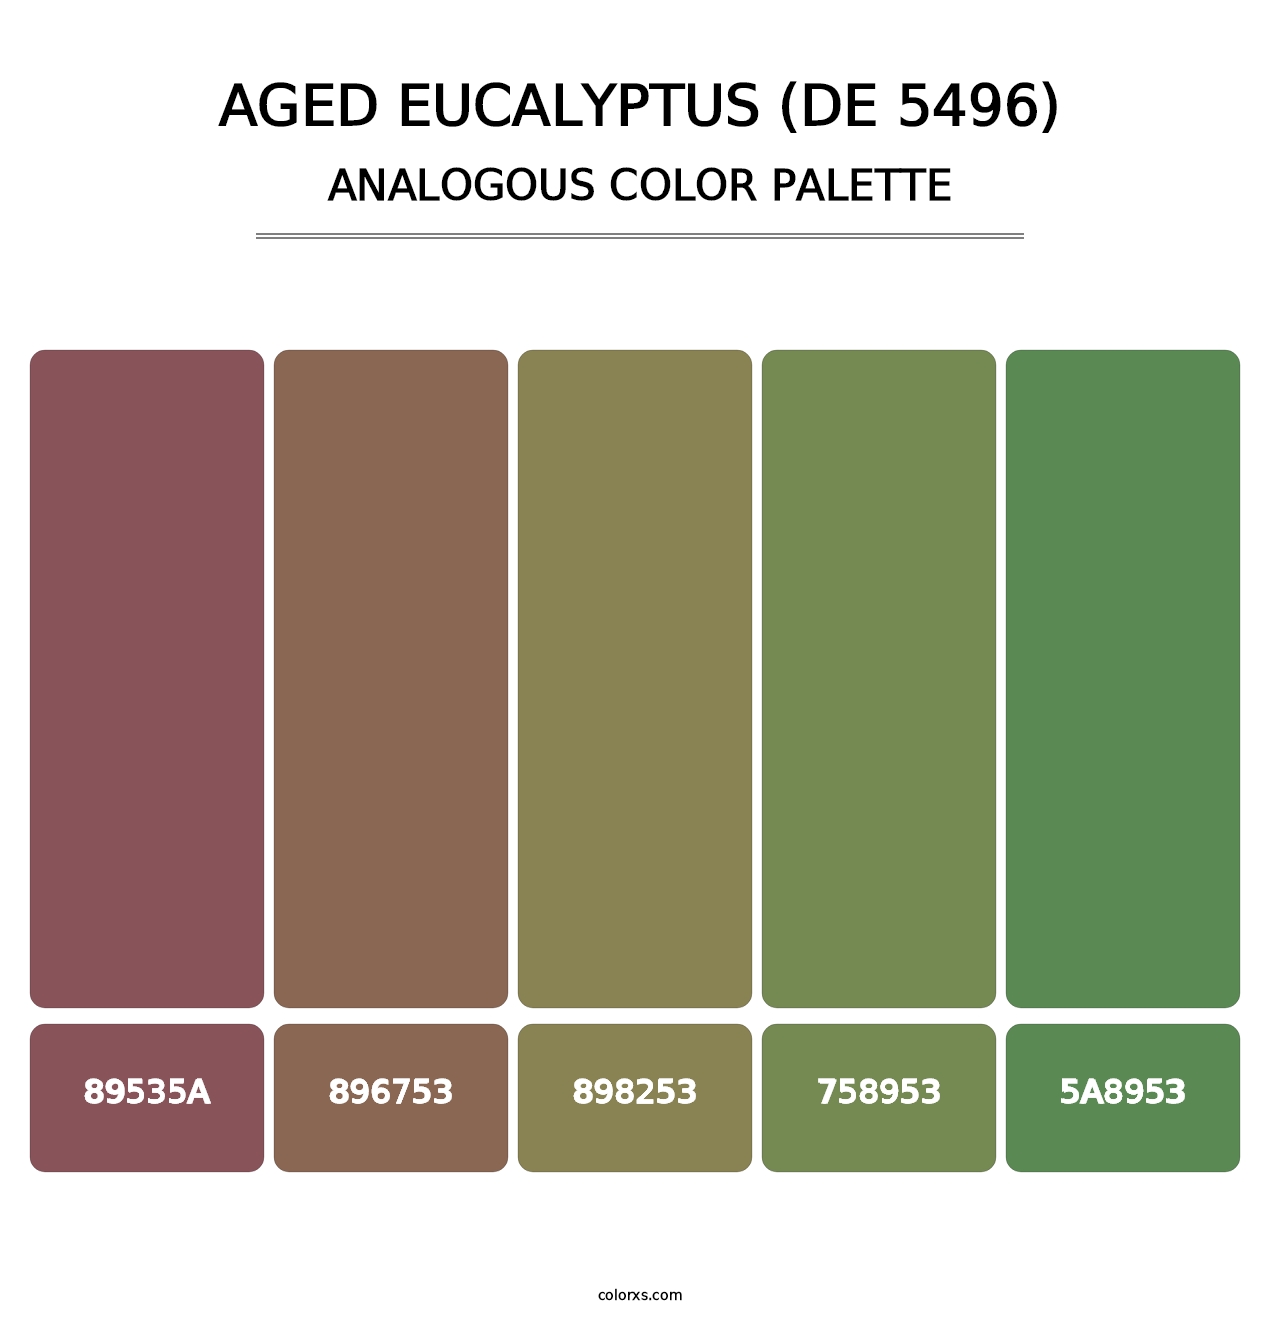 Aged Eucalyptus (DE 5496) - Analogous Color Palette